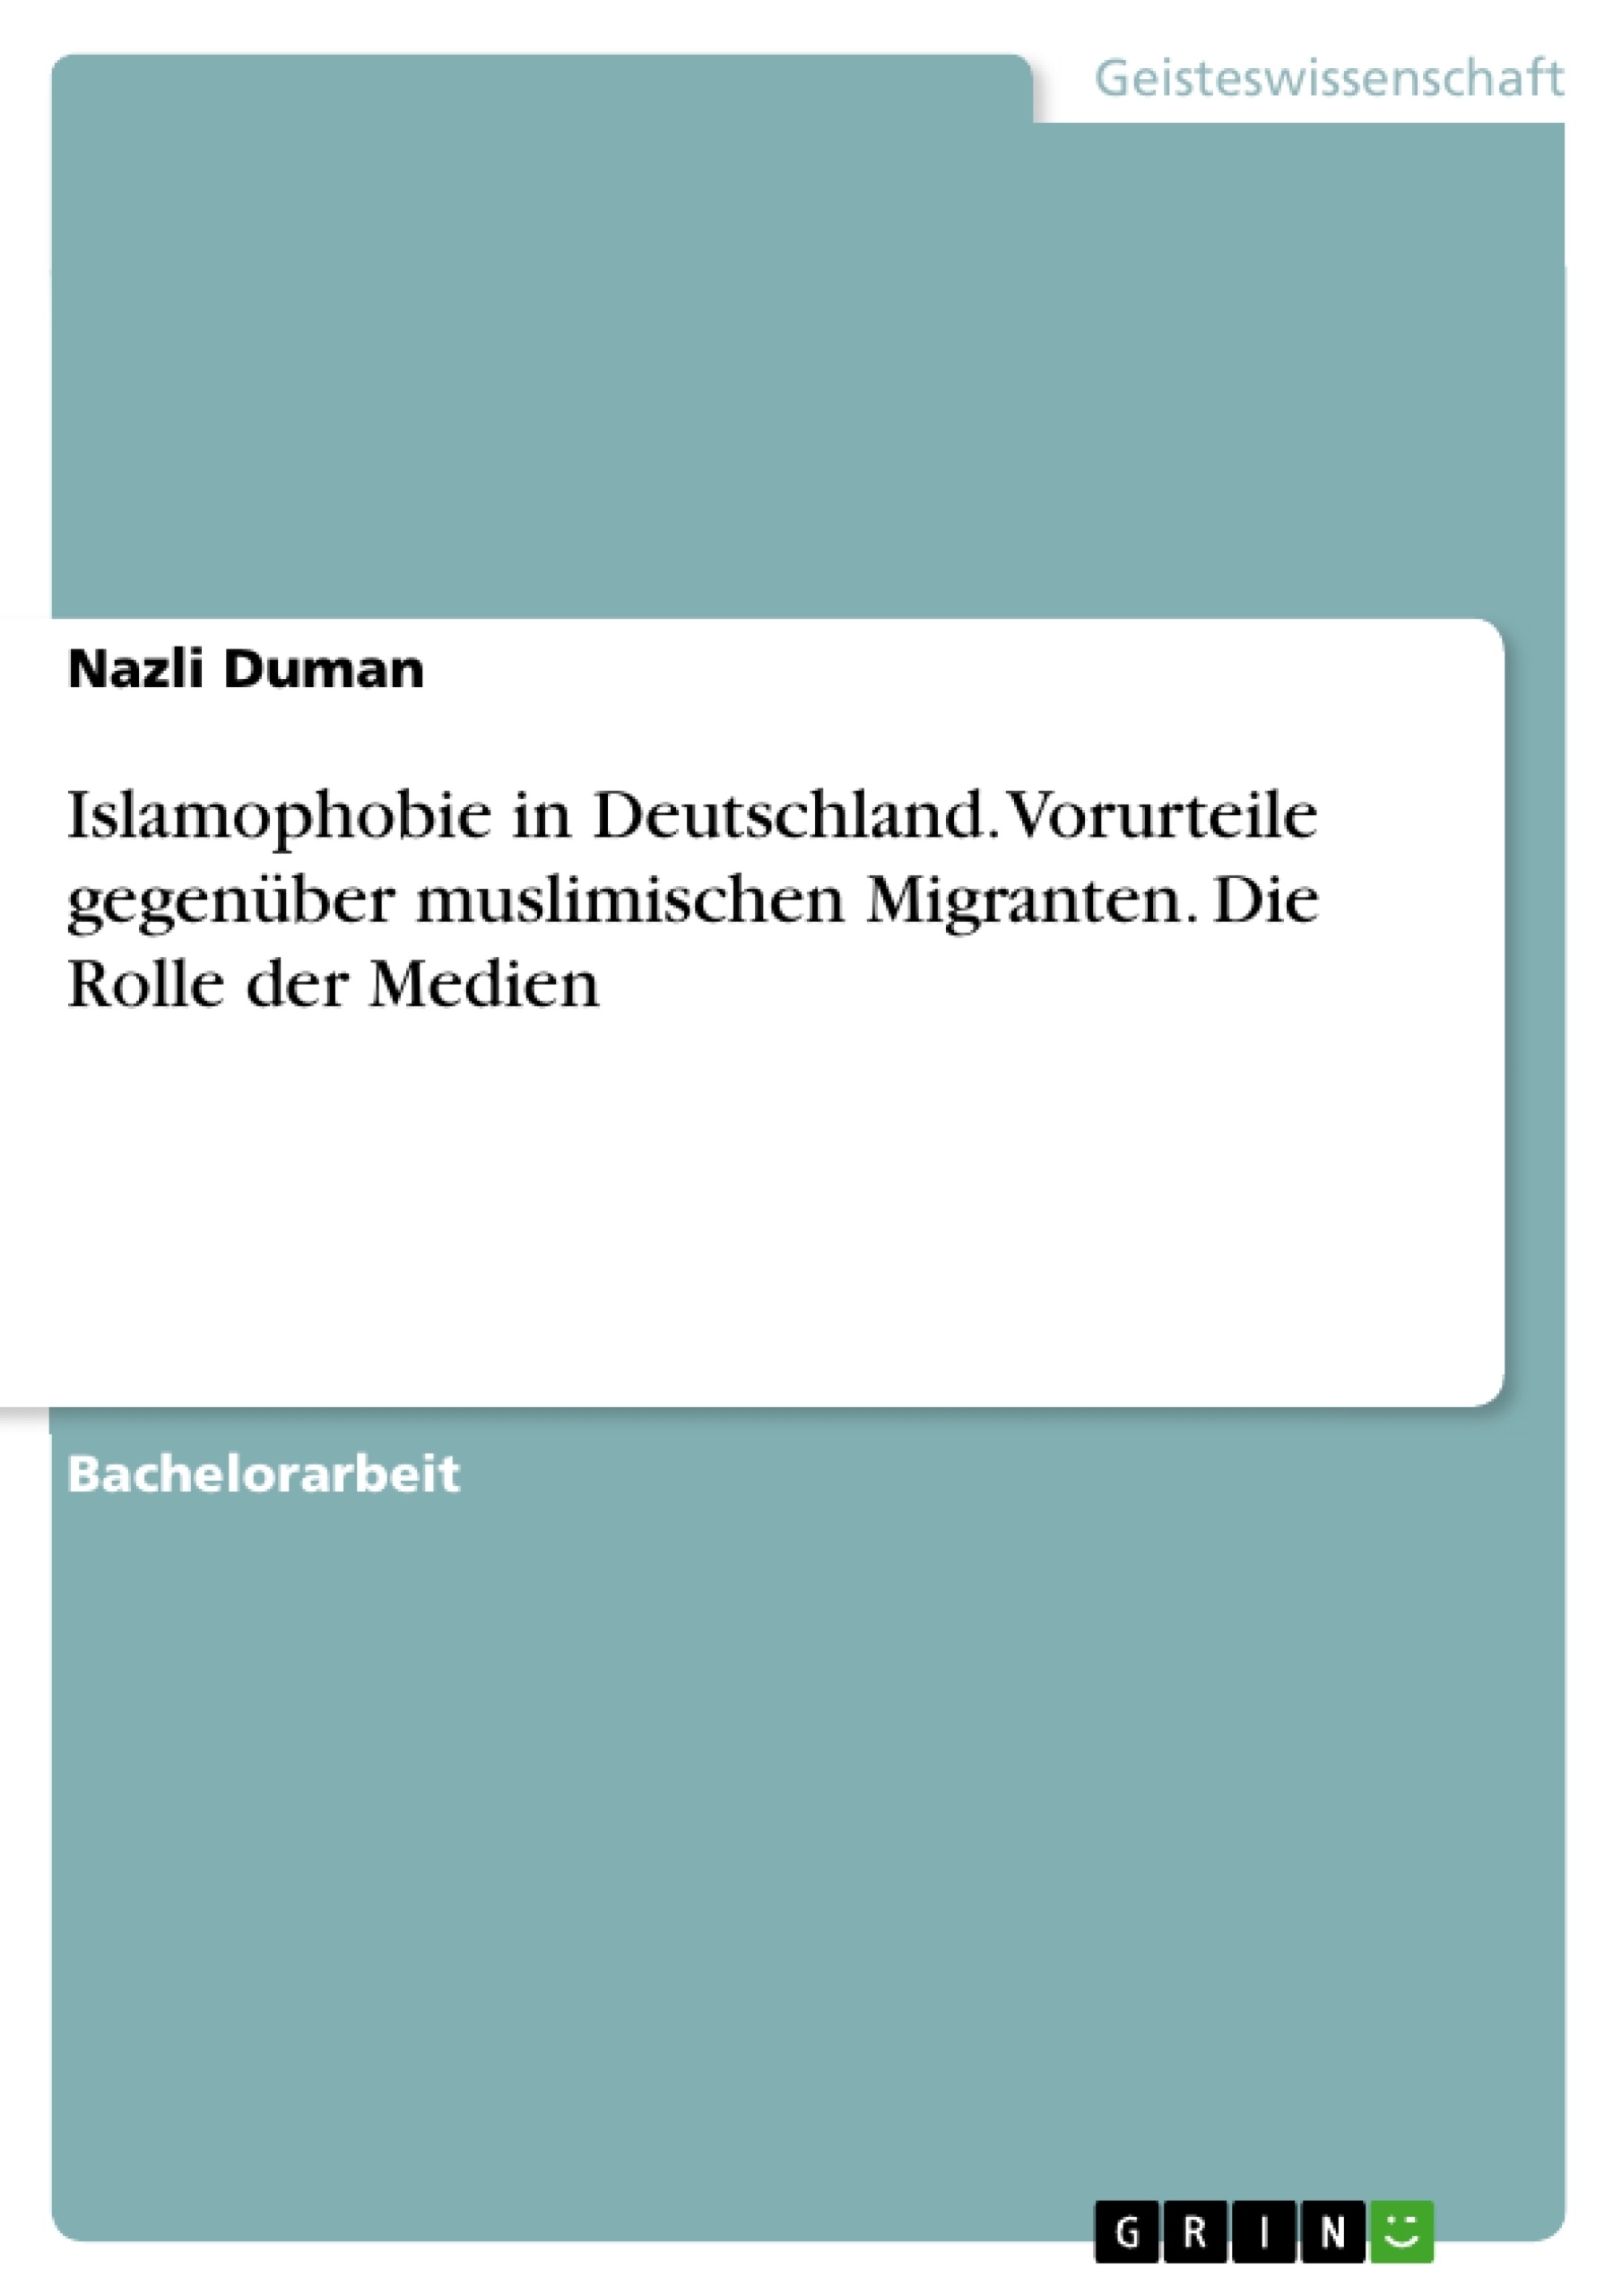 Título: Islamophobie in Deutschland. Vorurteile gegenüber muslimischen Migranten. Die Rolle der Medien